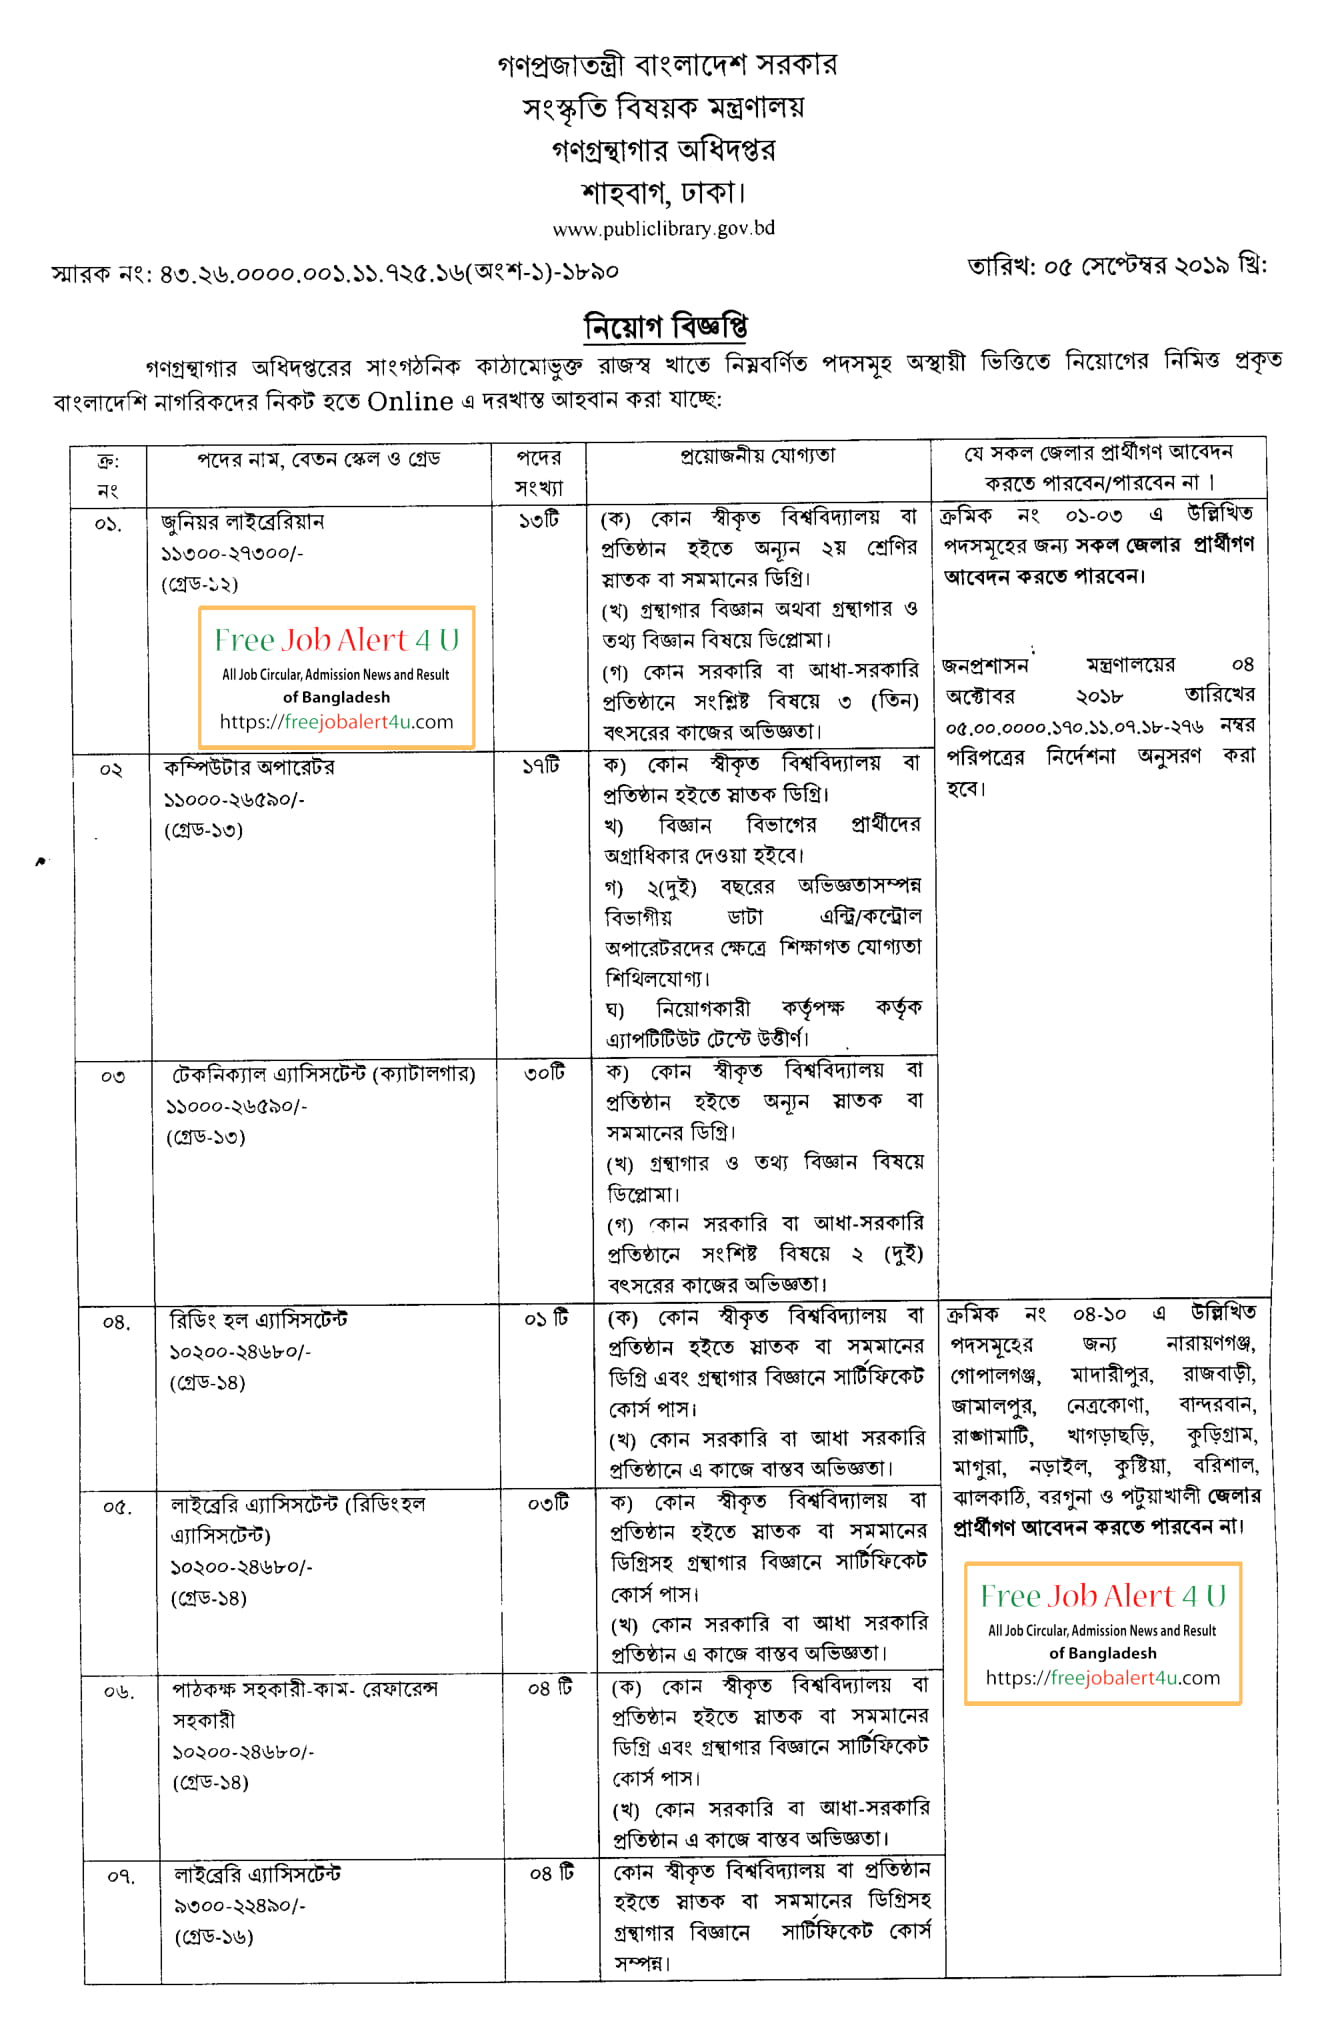 Department of Public Library (DPL) Job Circular 2019